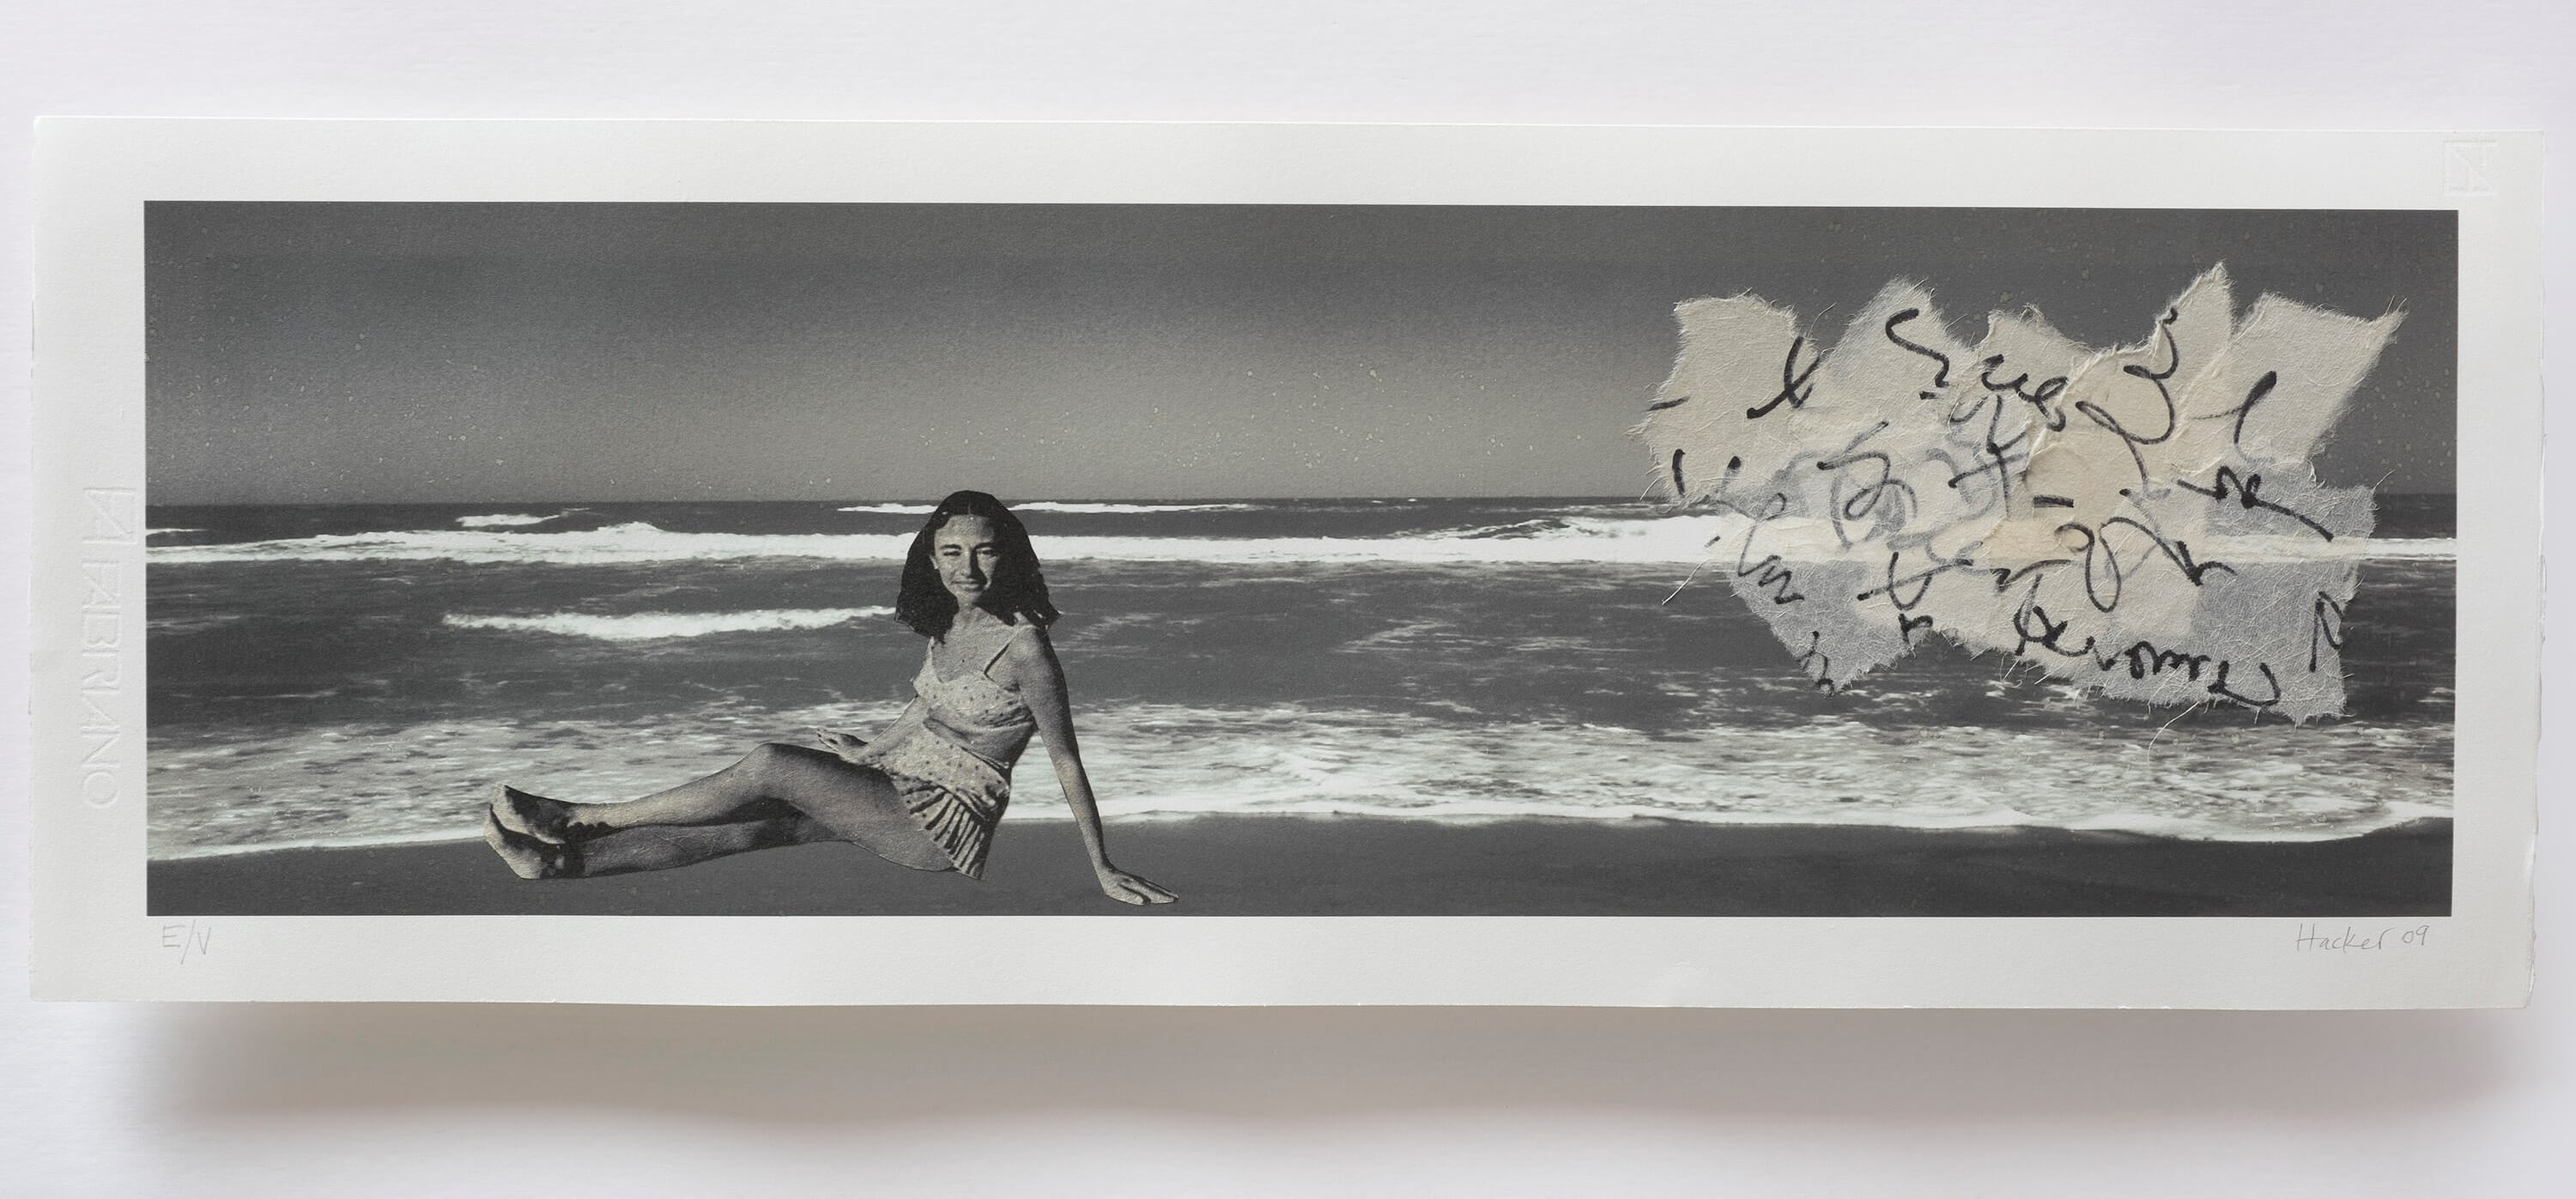 Obra de Paula Hacker - Entre el cielo y el mar - Impresión digital. Papel hecho a mano. 85 x 39 cm, 2009